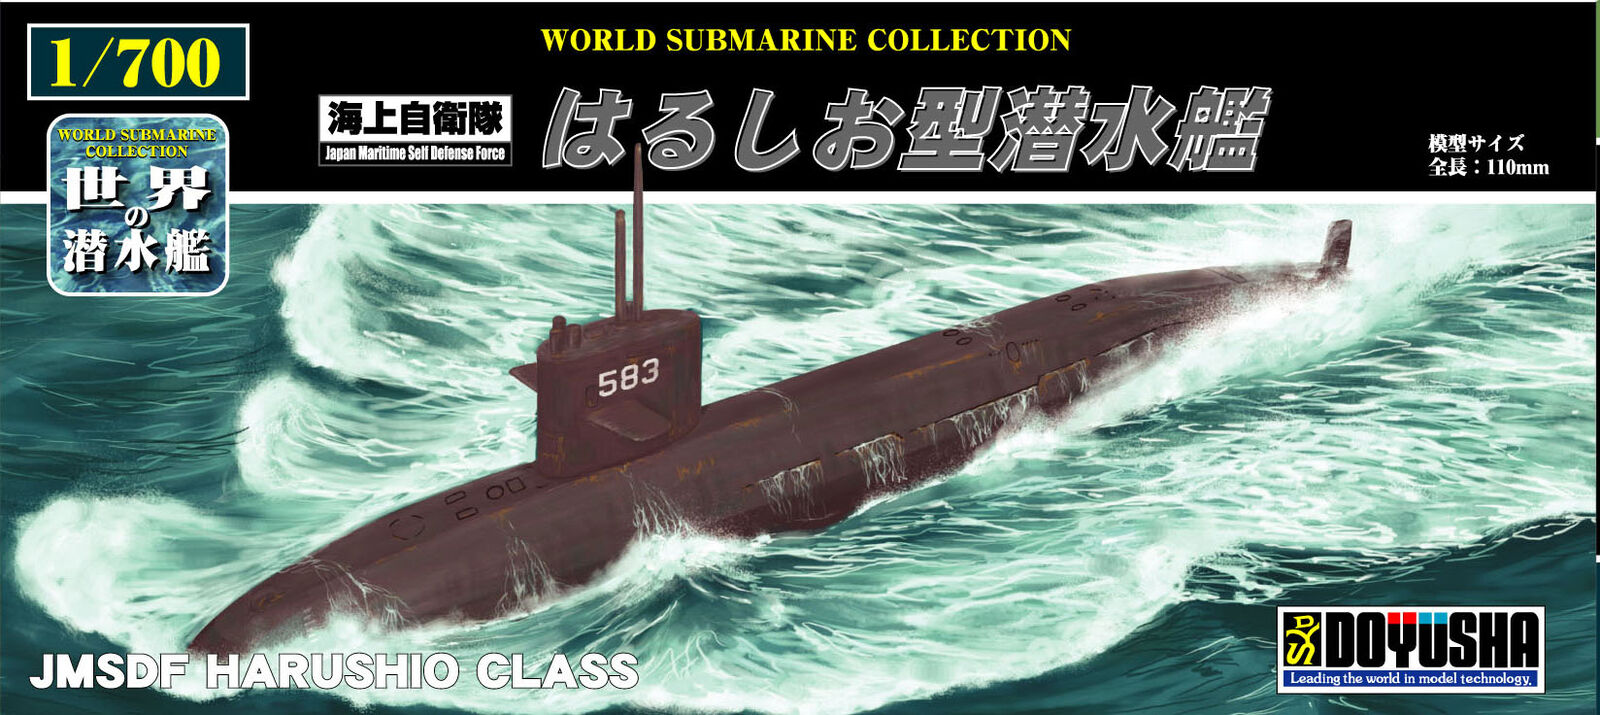 Doyusha 1/700 JMSDF Harushio Class Submarine